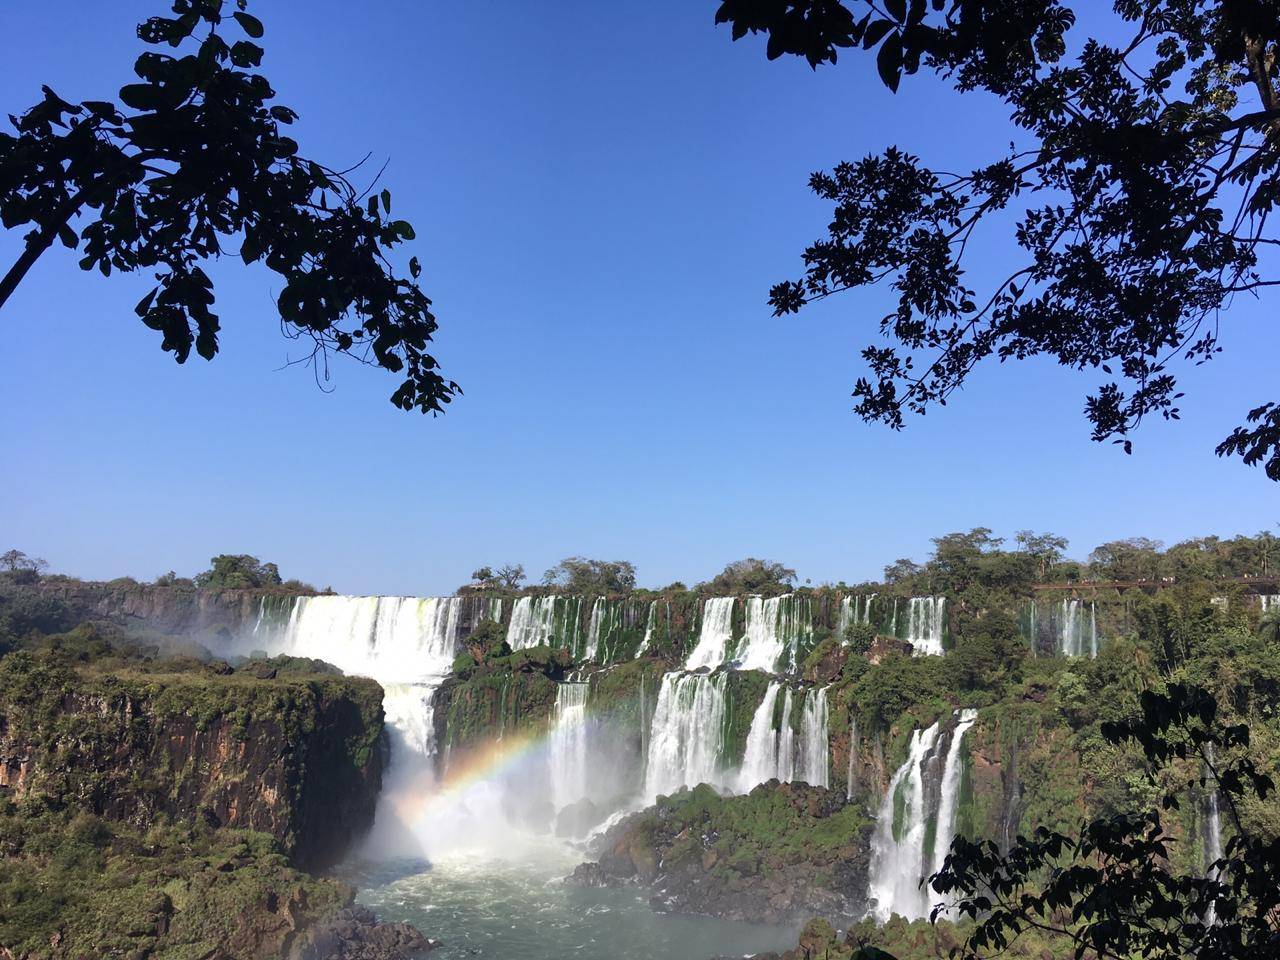 Cataratas de Iguazú im Dreiländereck Paraguay, Argentinien, Brasilien